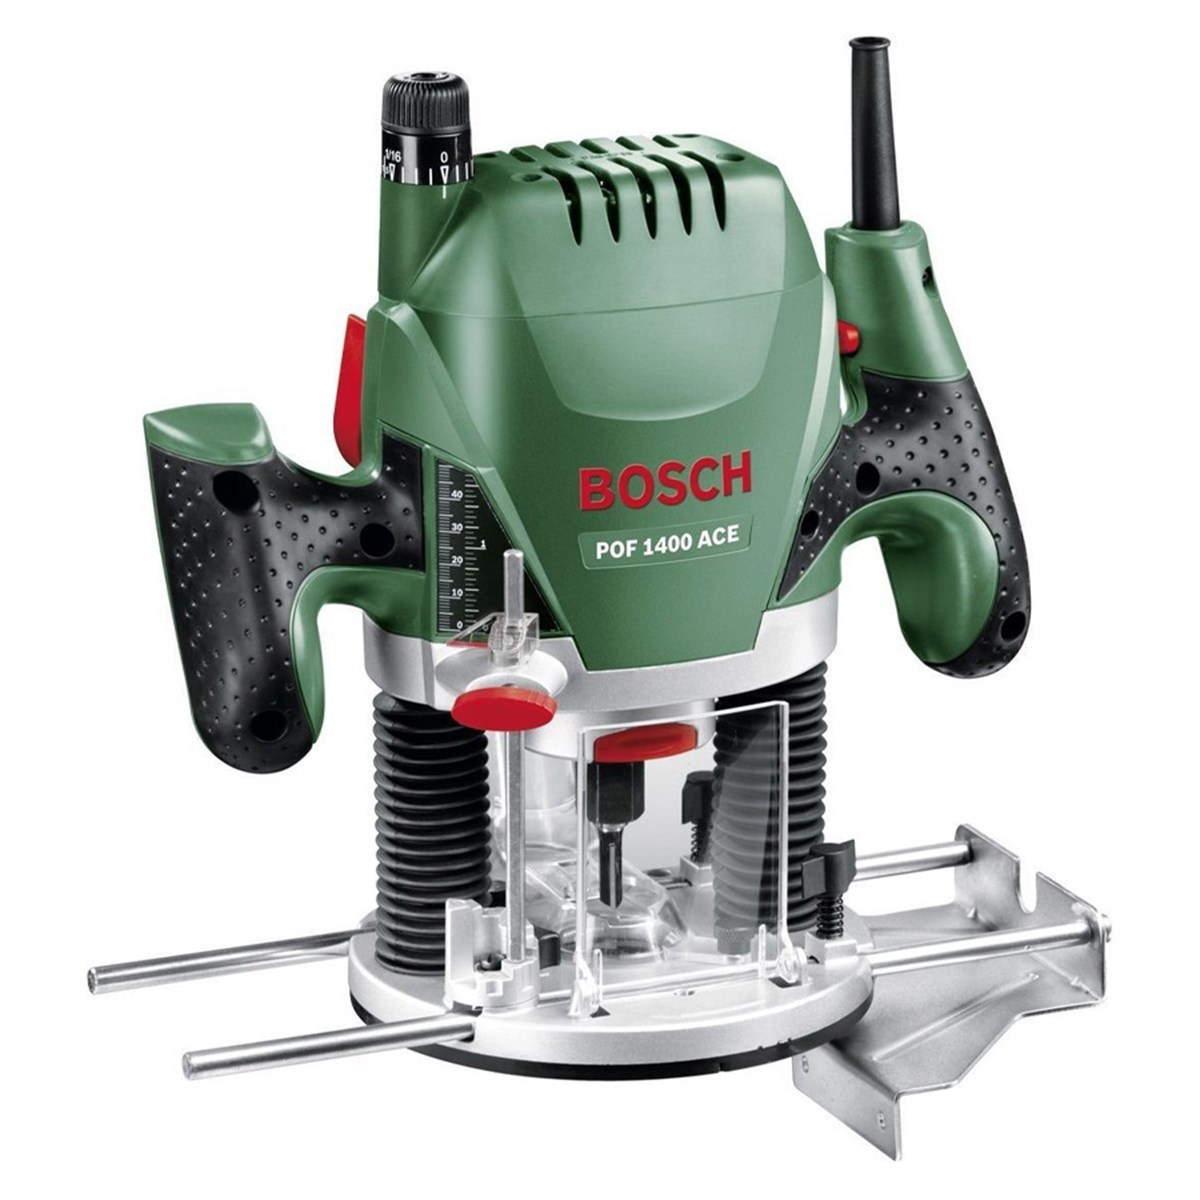 Bosch Pof 1400 Ace Freze 060326c800